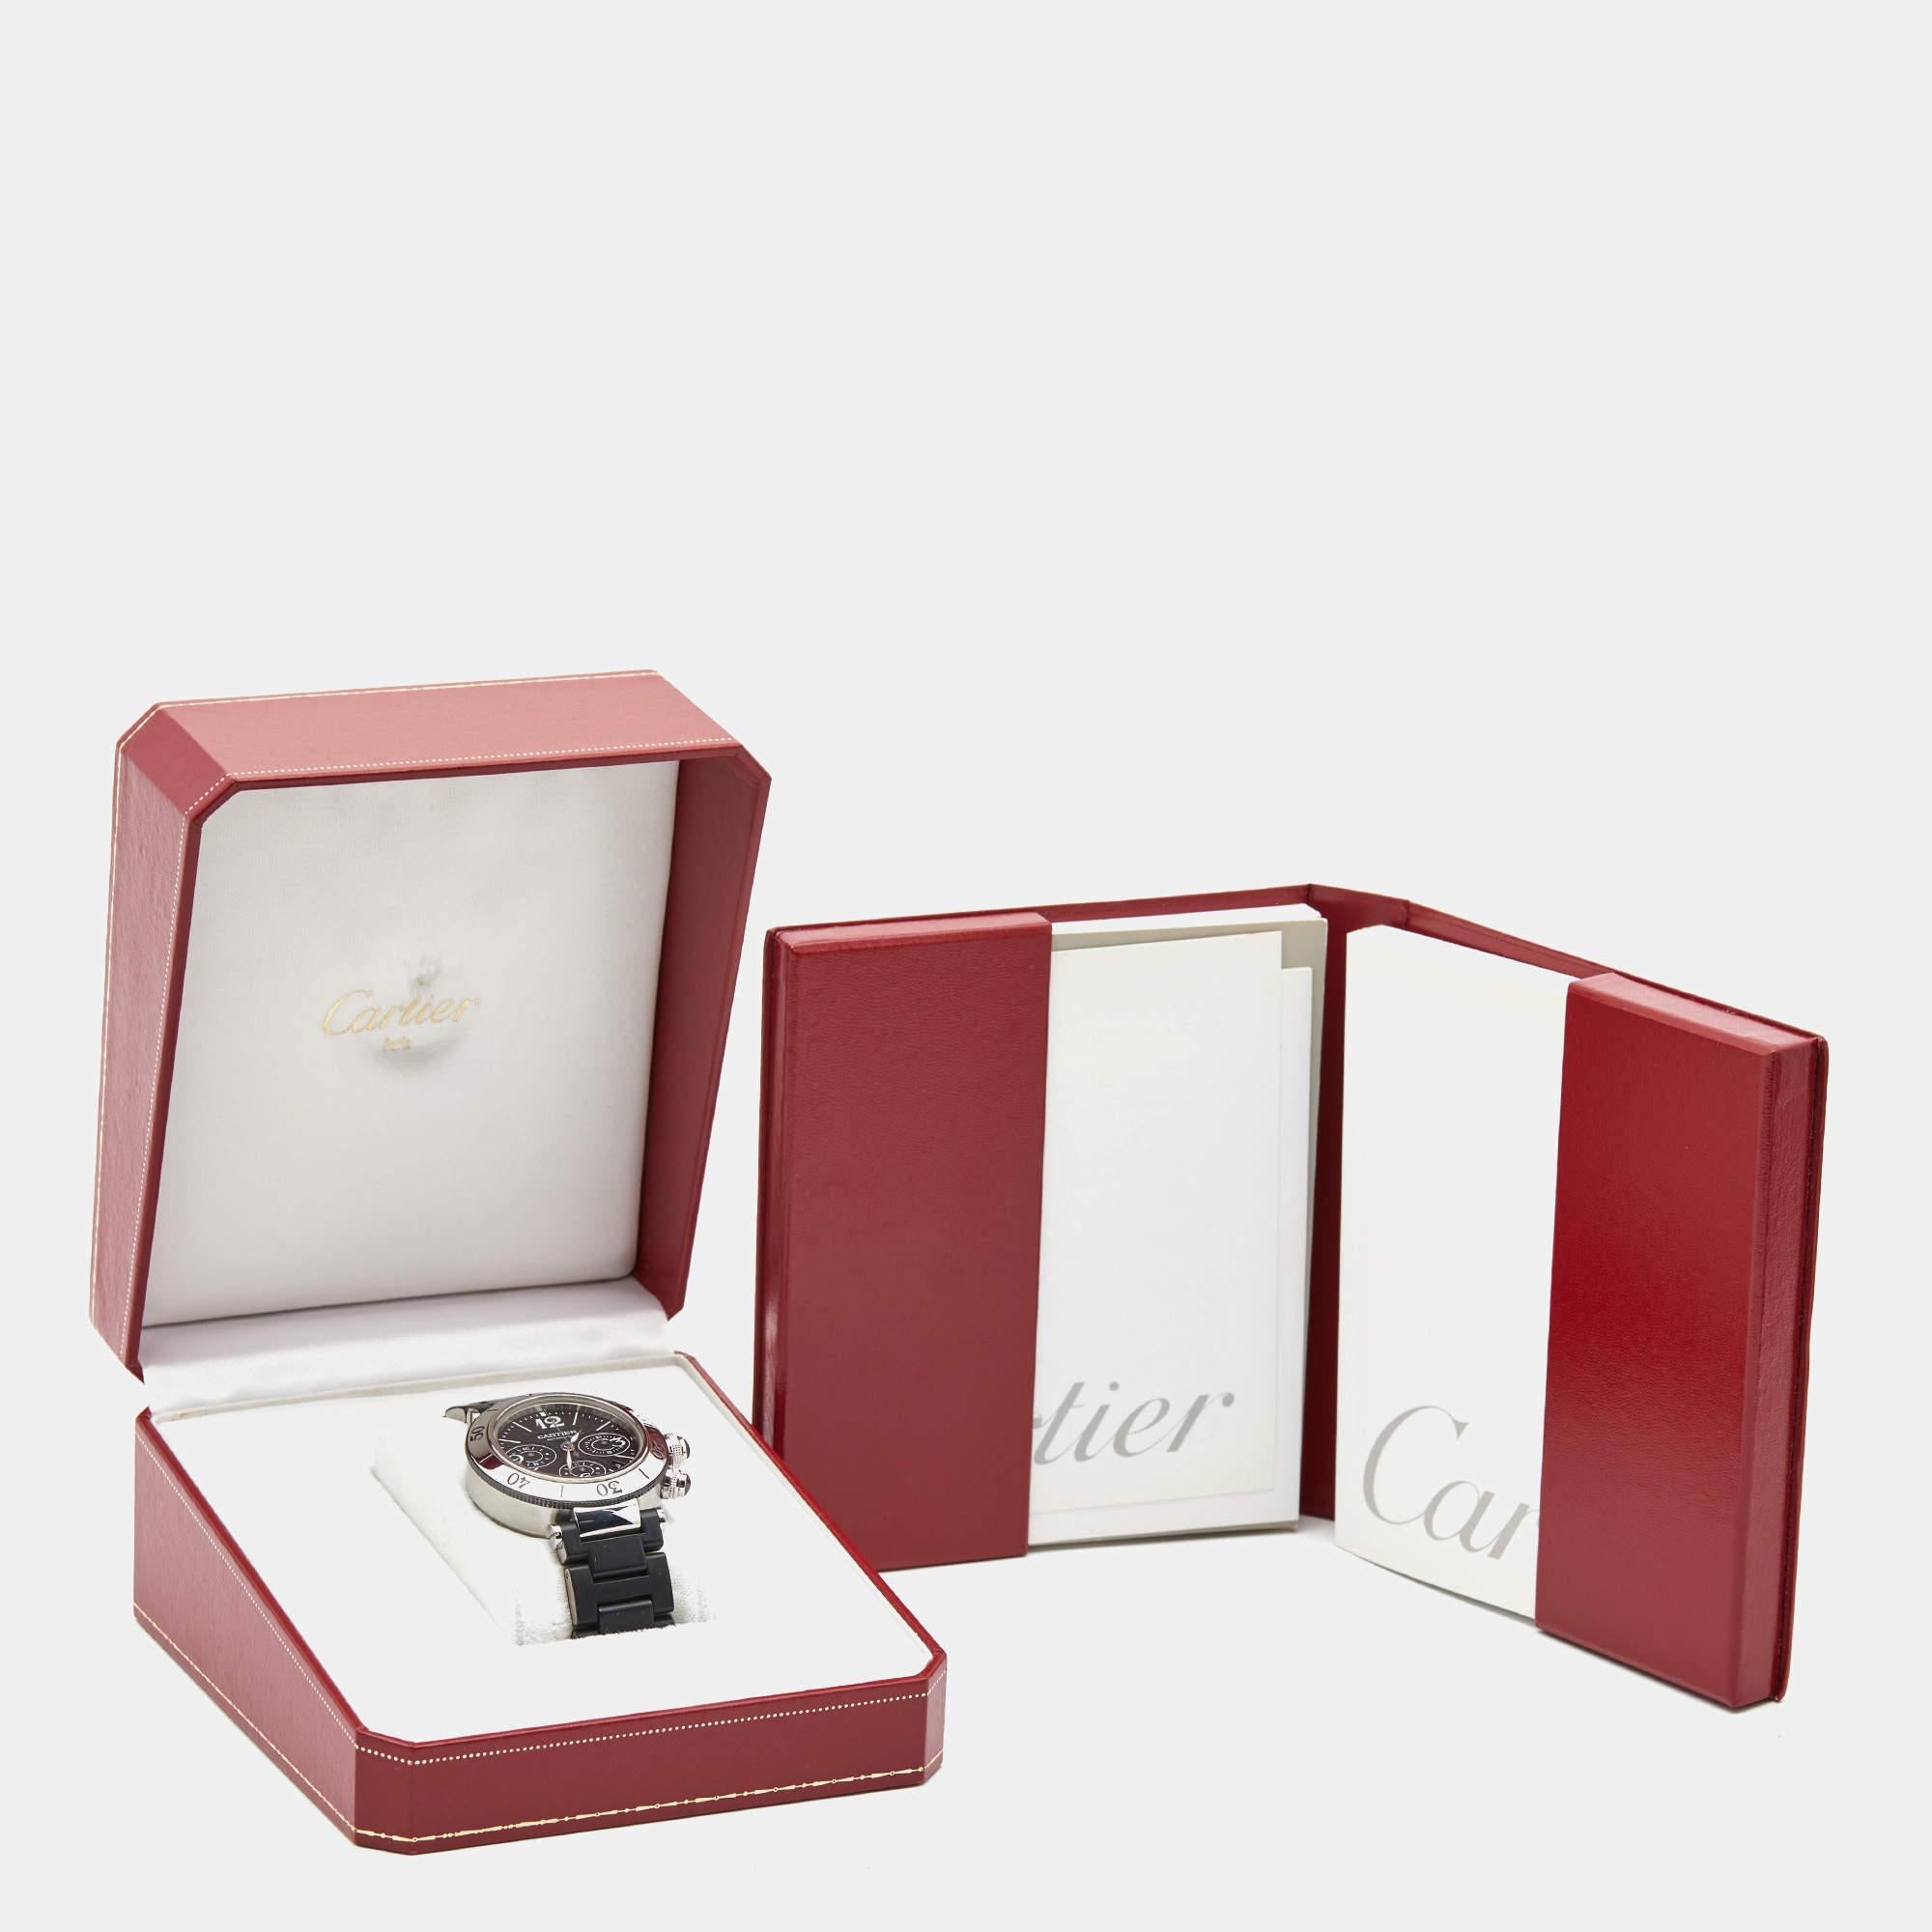 Laissez cette belle montre-bracelet Pasha Seatimer de Cartier vous accompagner avec aisance et style luxueux. Magnifiquement fabriquée à l'aide de matériaux de la meilleure qualité, cette montre automatique est conçue pour être durable et